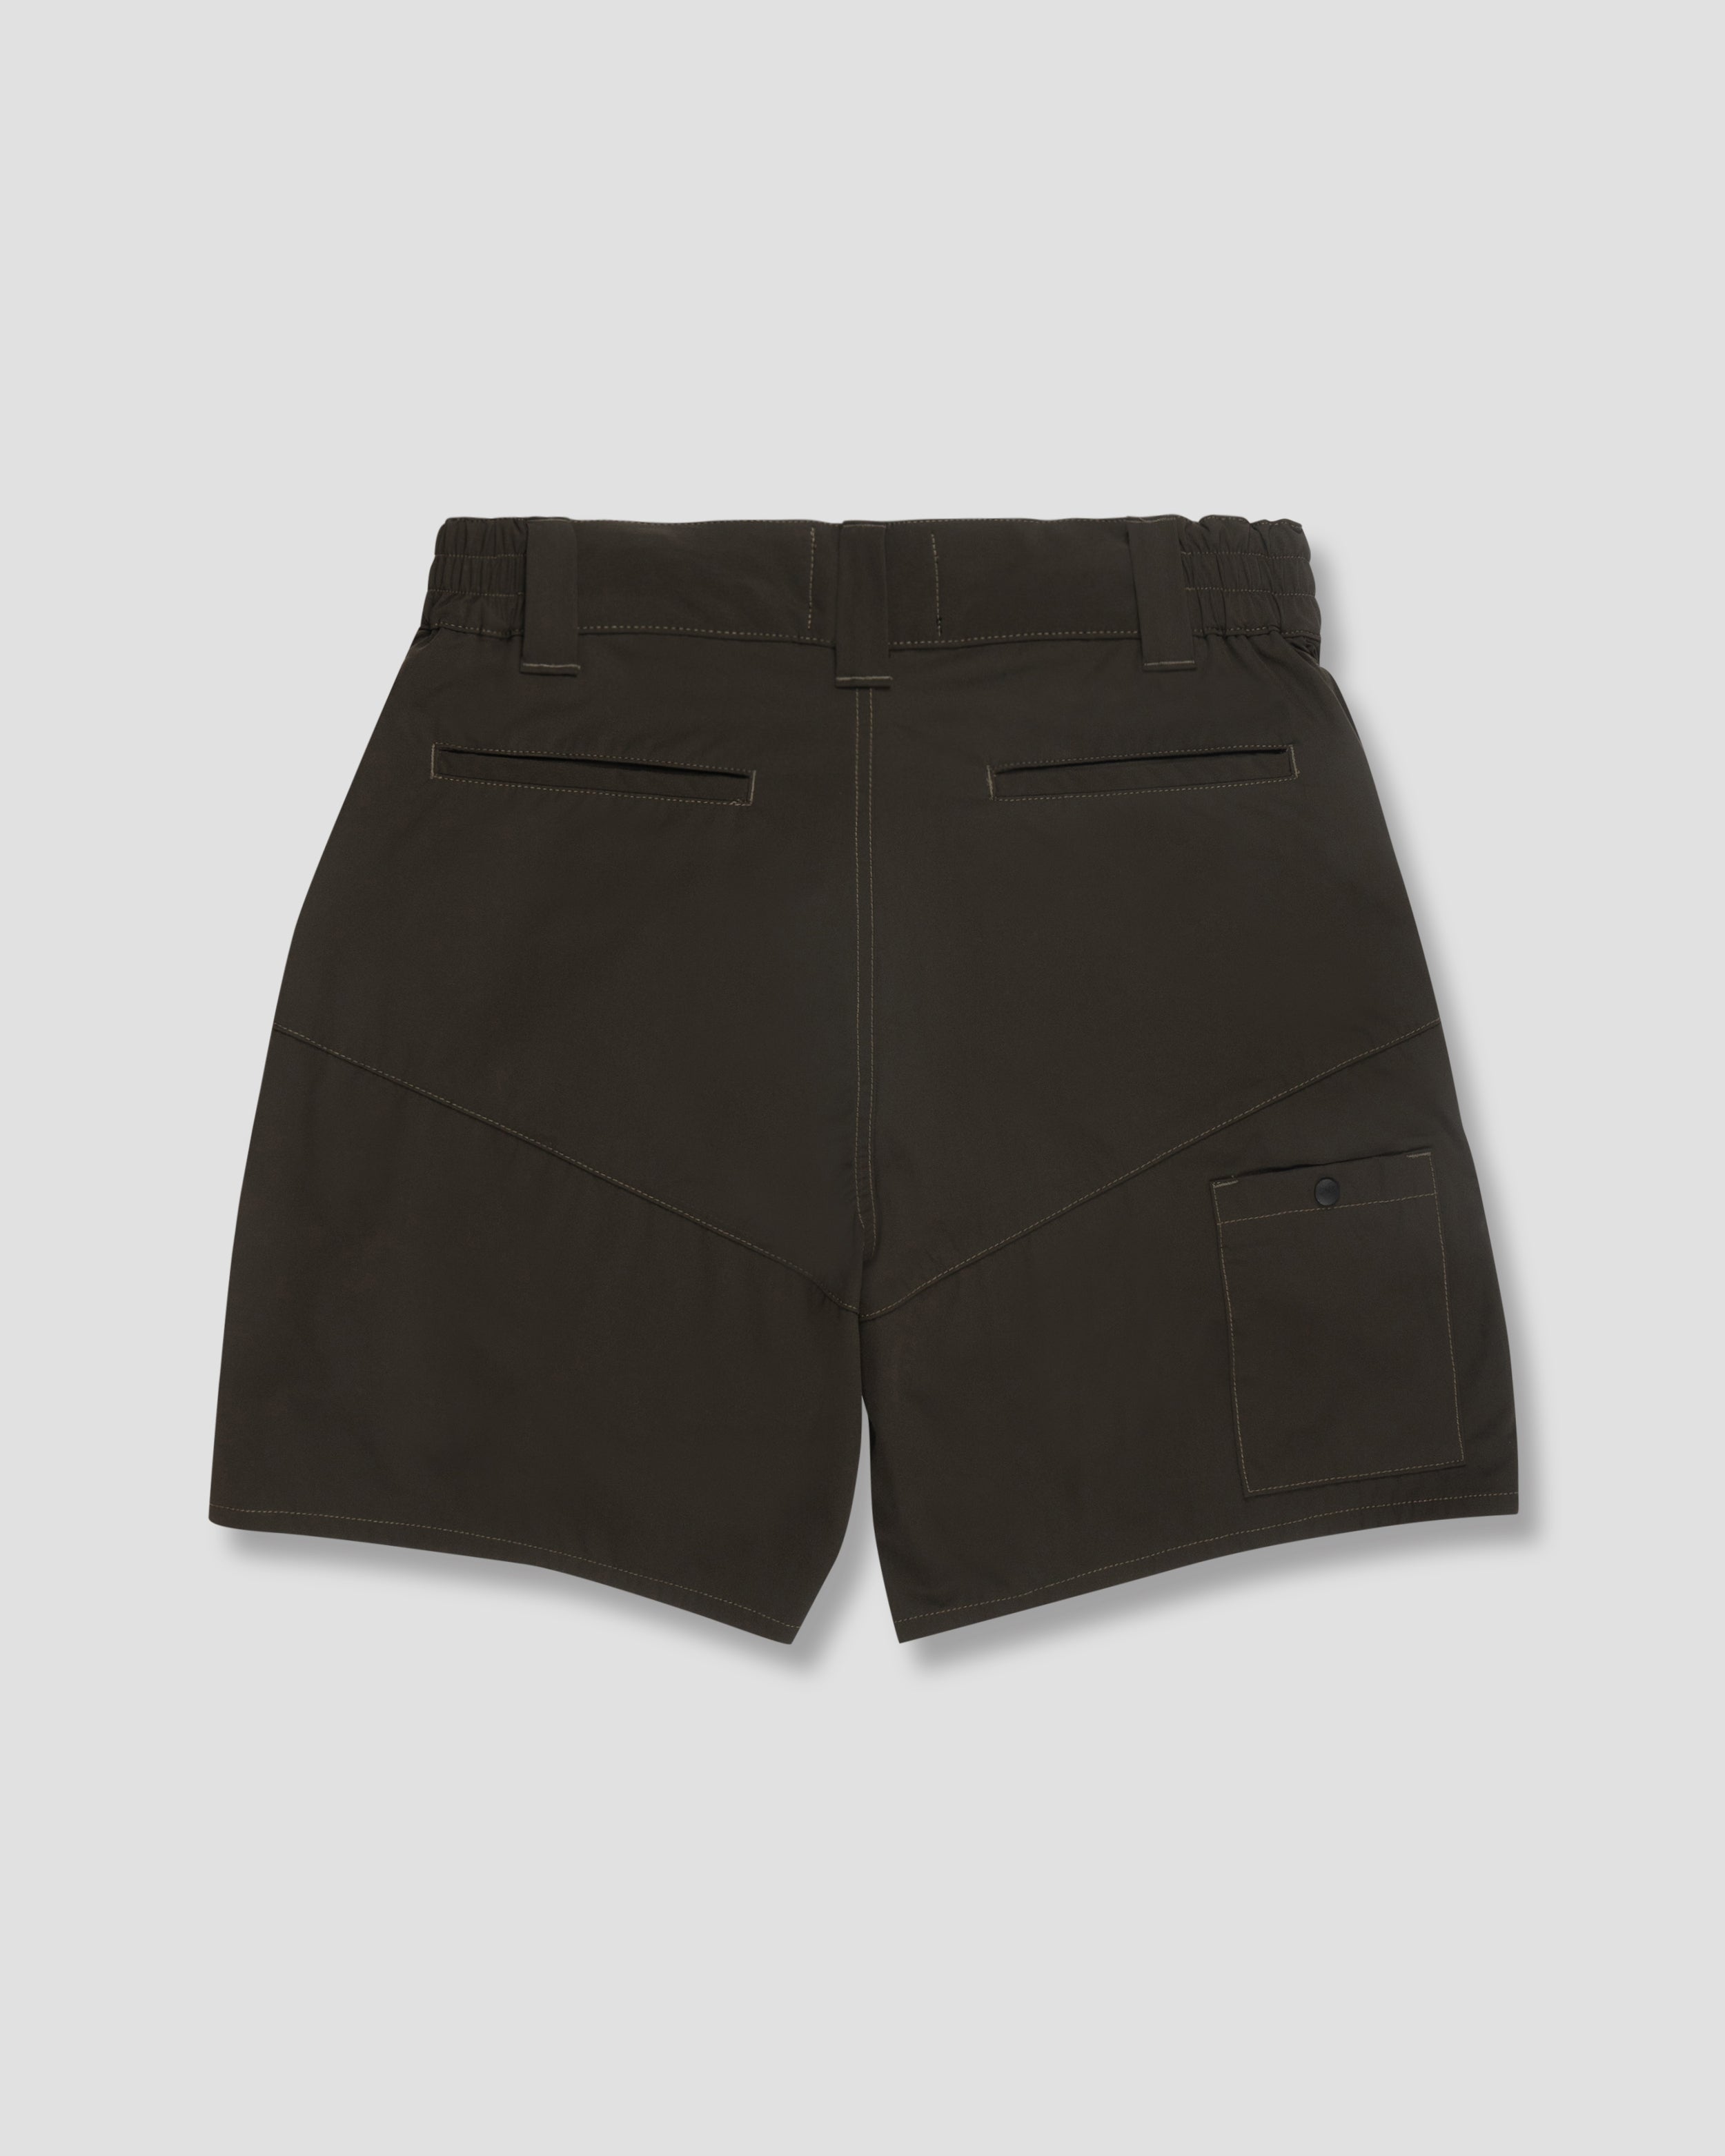 Trapezoid Pockets Utility Shorts - Olive